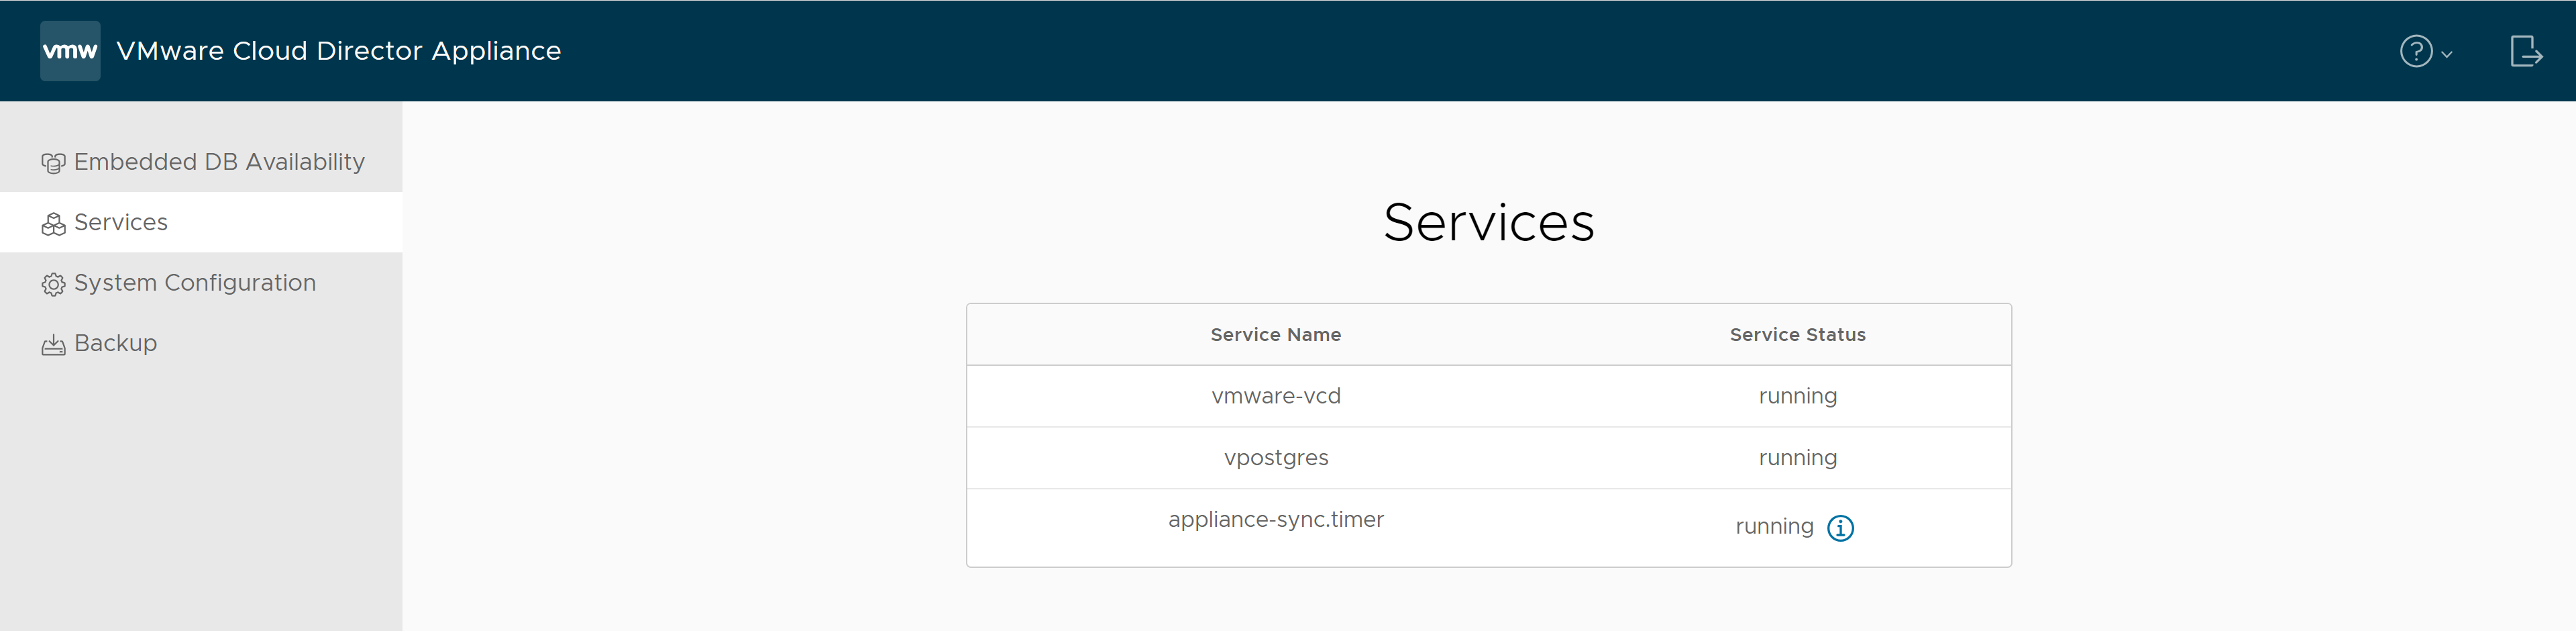 在 VMware Cloud Director 應用裝置管理使用者介面的 [服務] 索引標籤上，可以找到服務的名稱及其狀態。